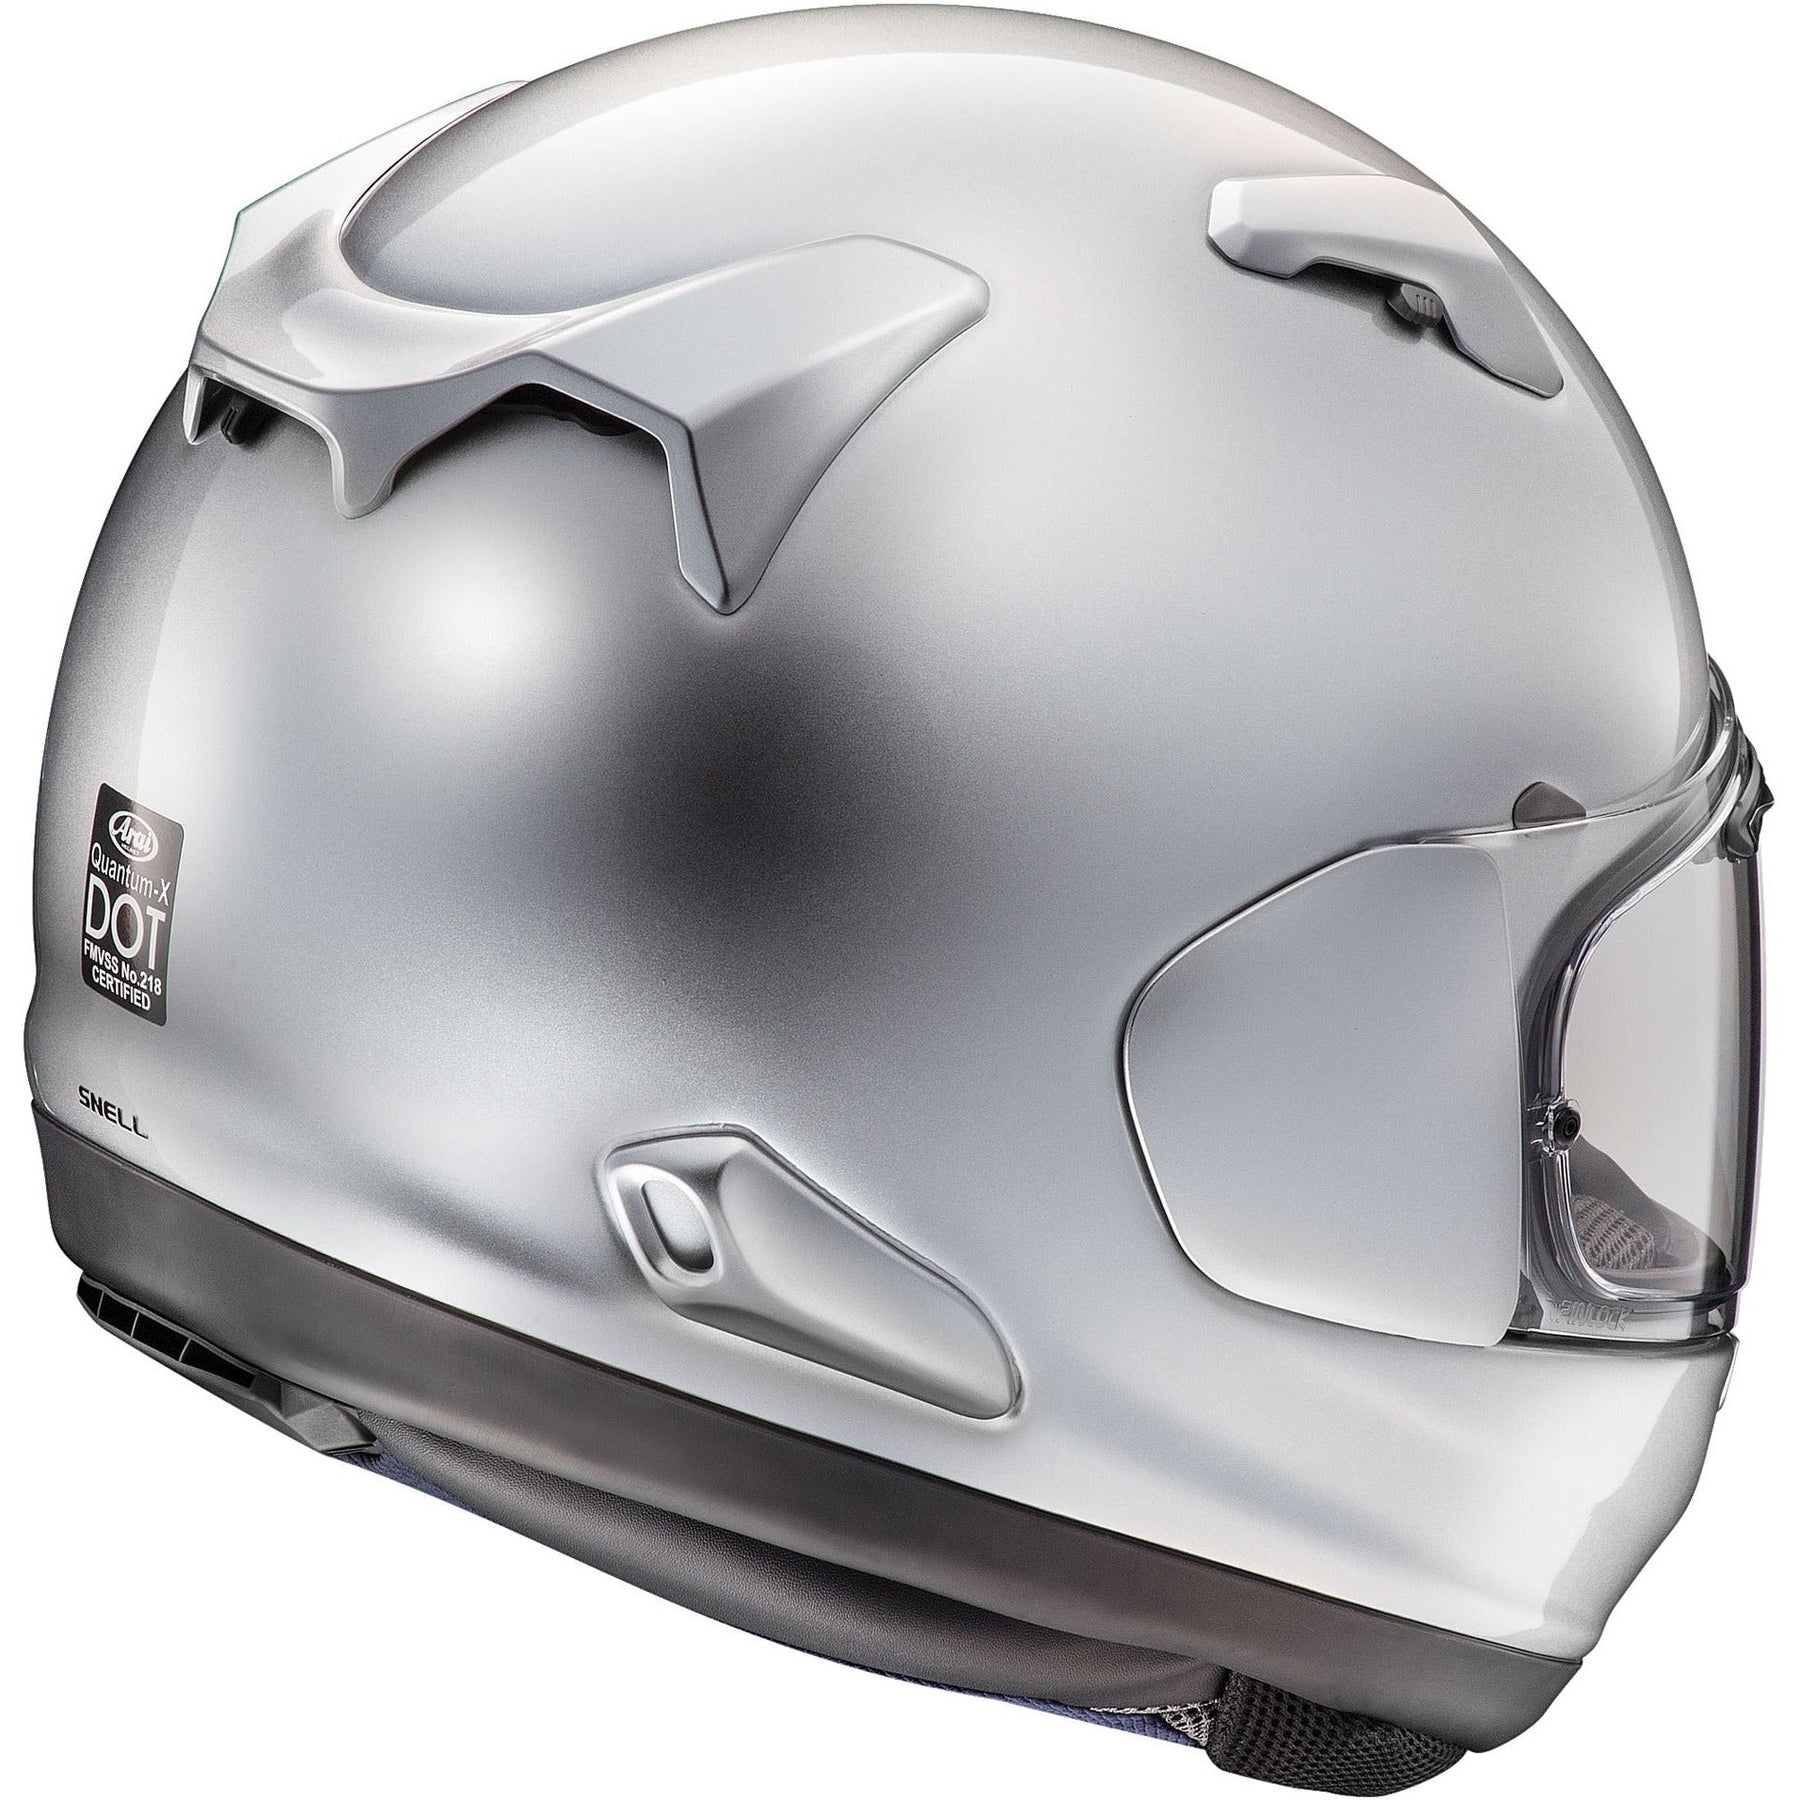 Quantum-X Helmet (Aluminum Silver)